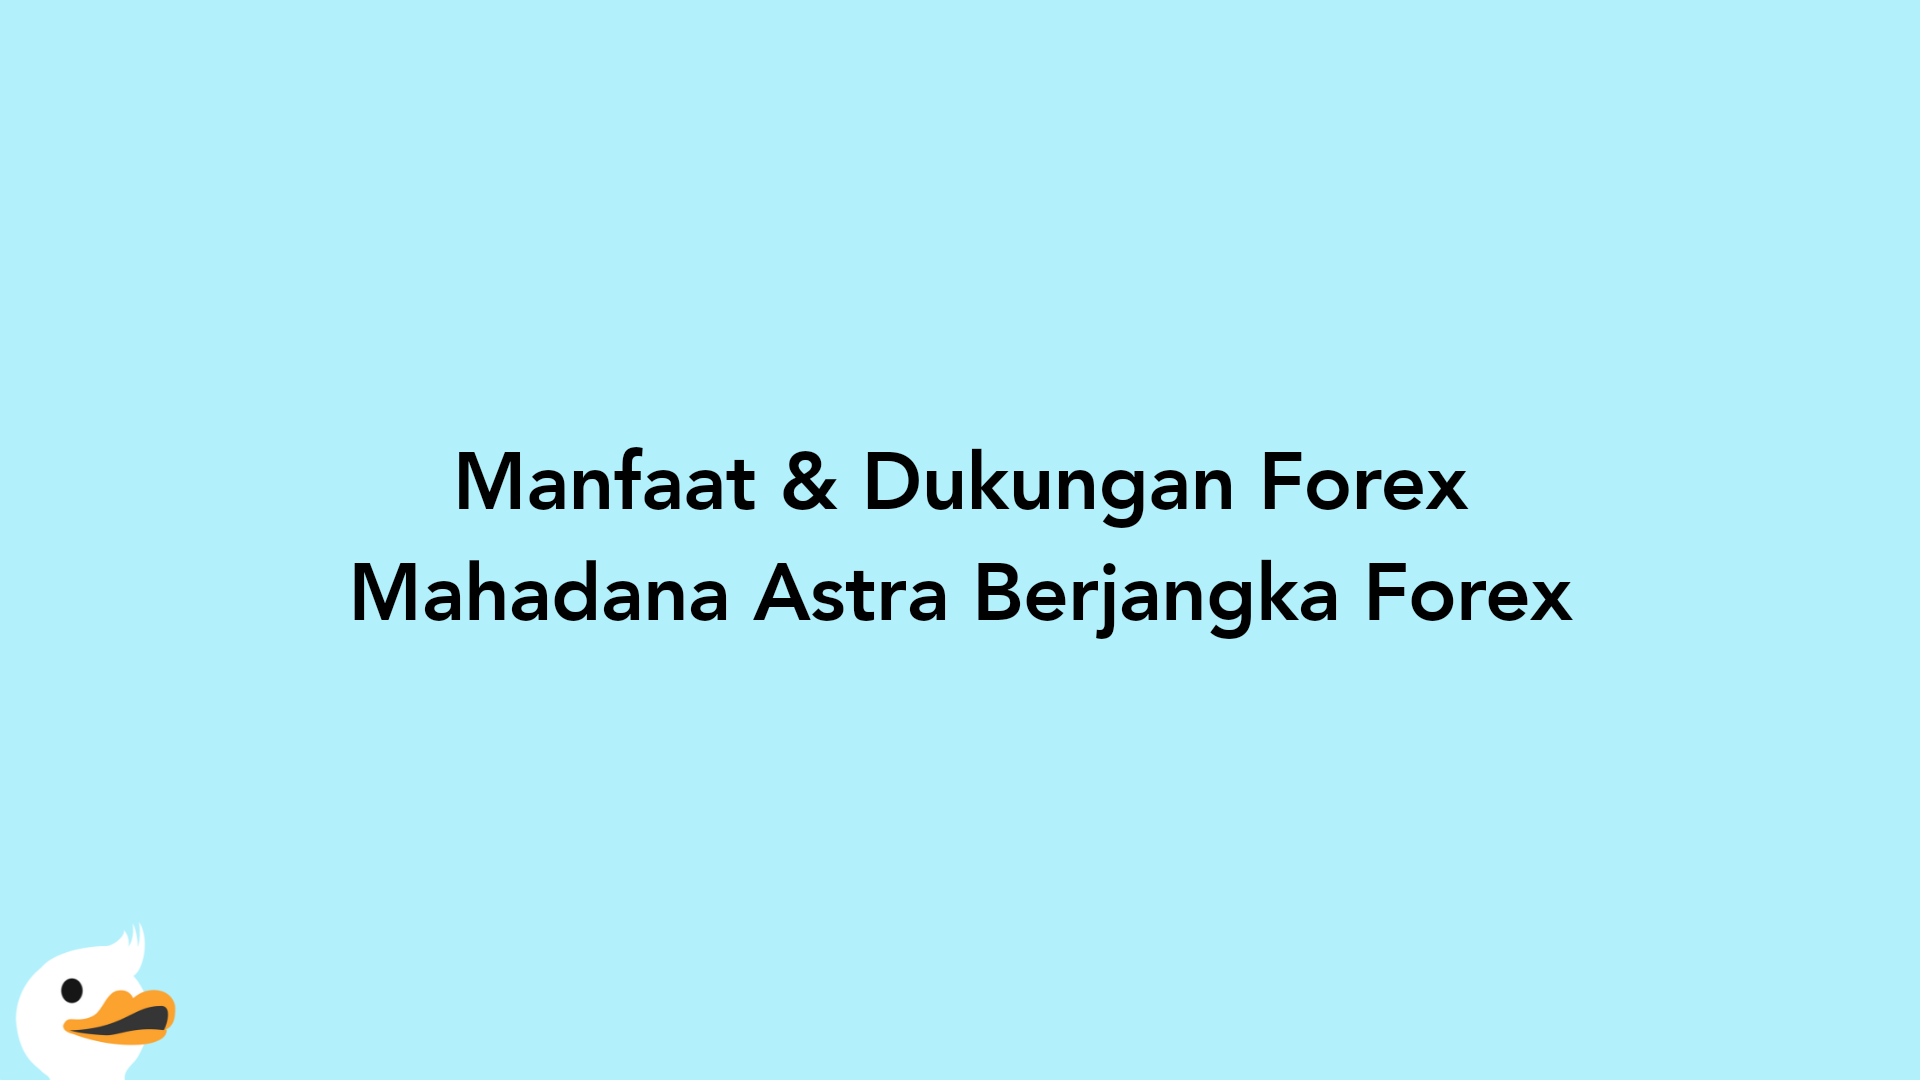 Manfaat & Dukungan Forex Mahadana Astra Berjangka Forex